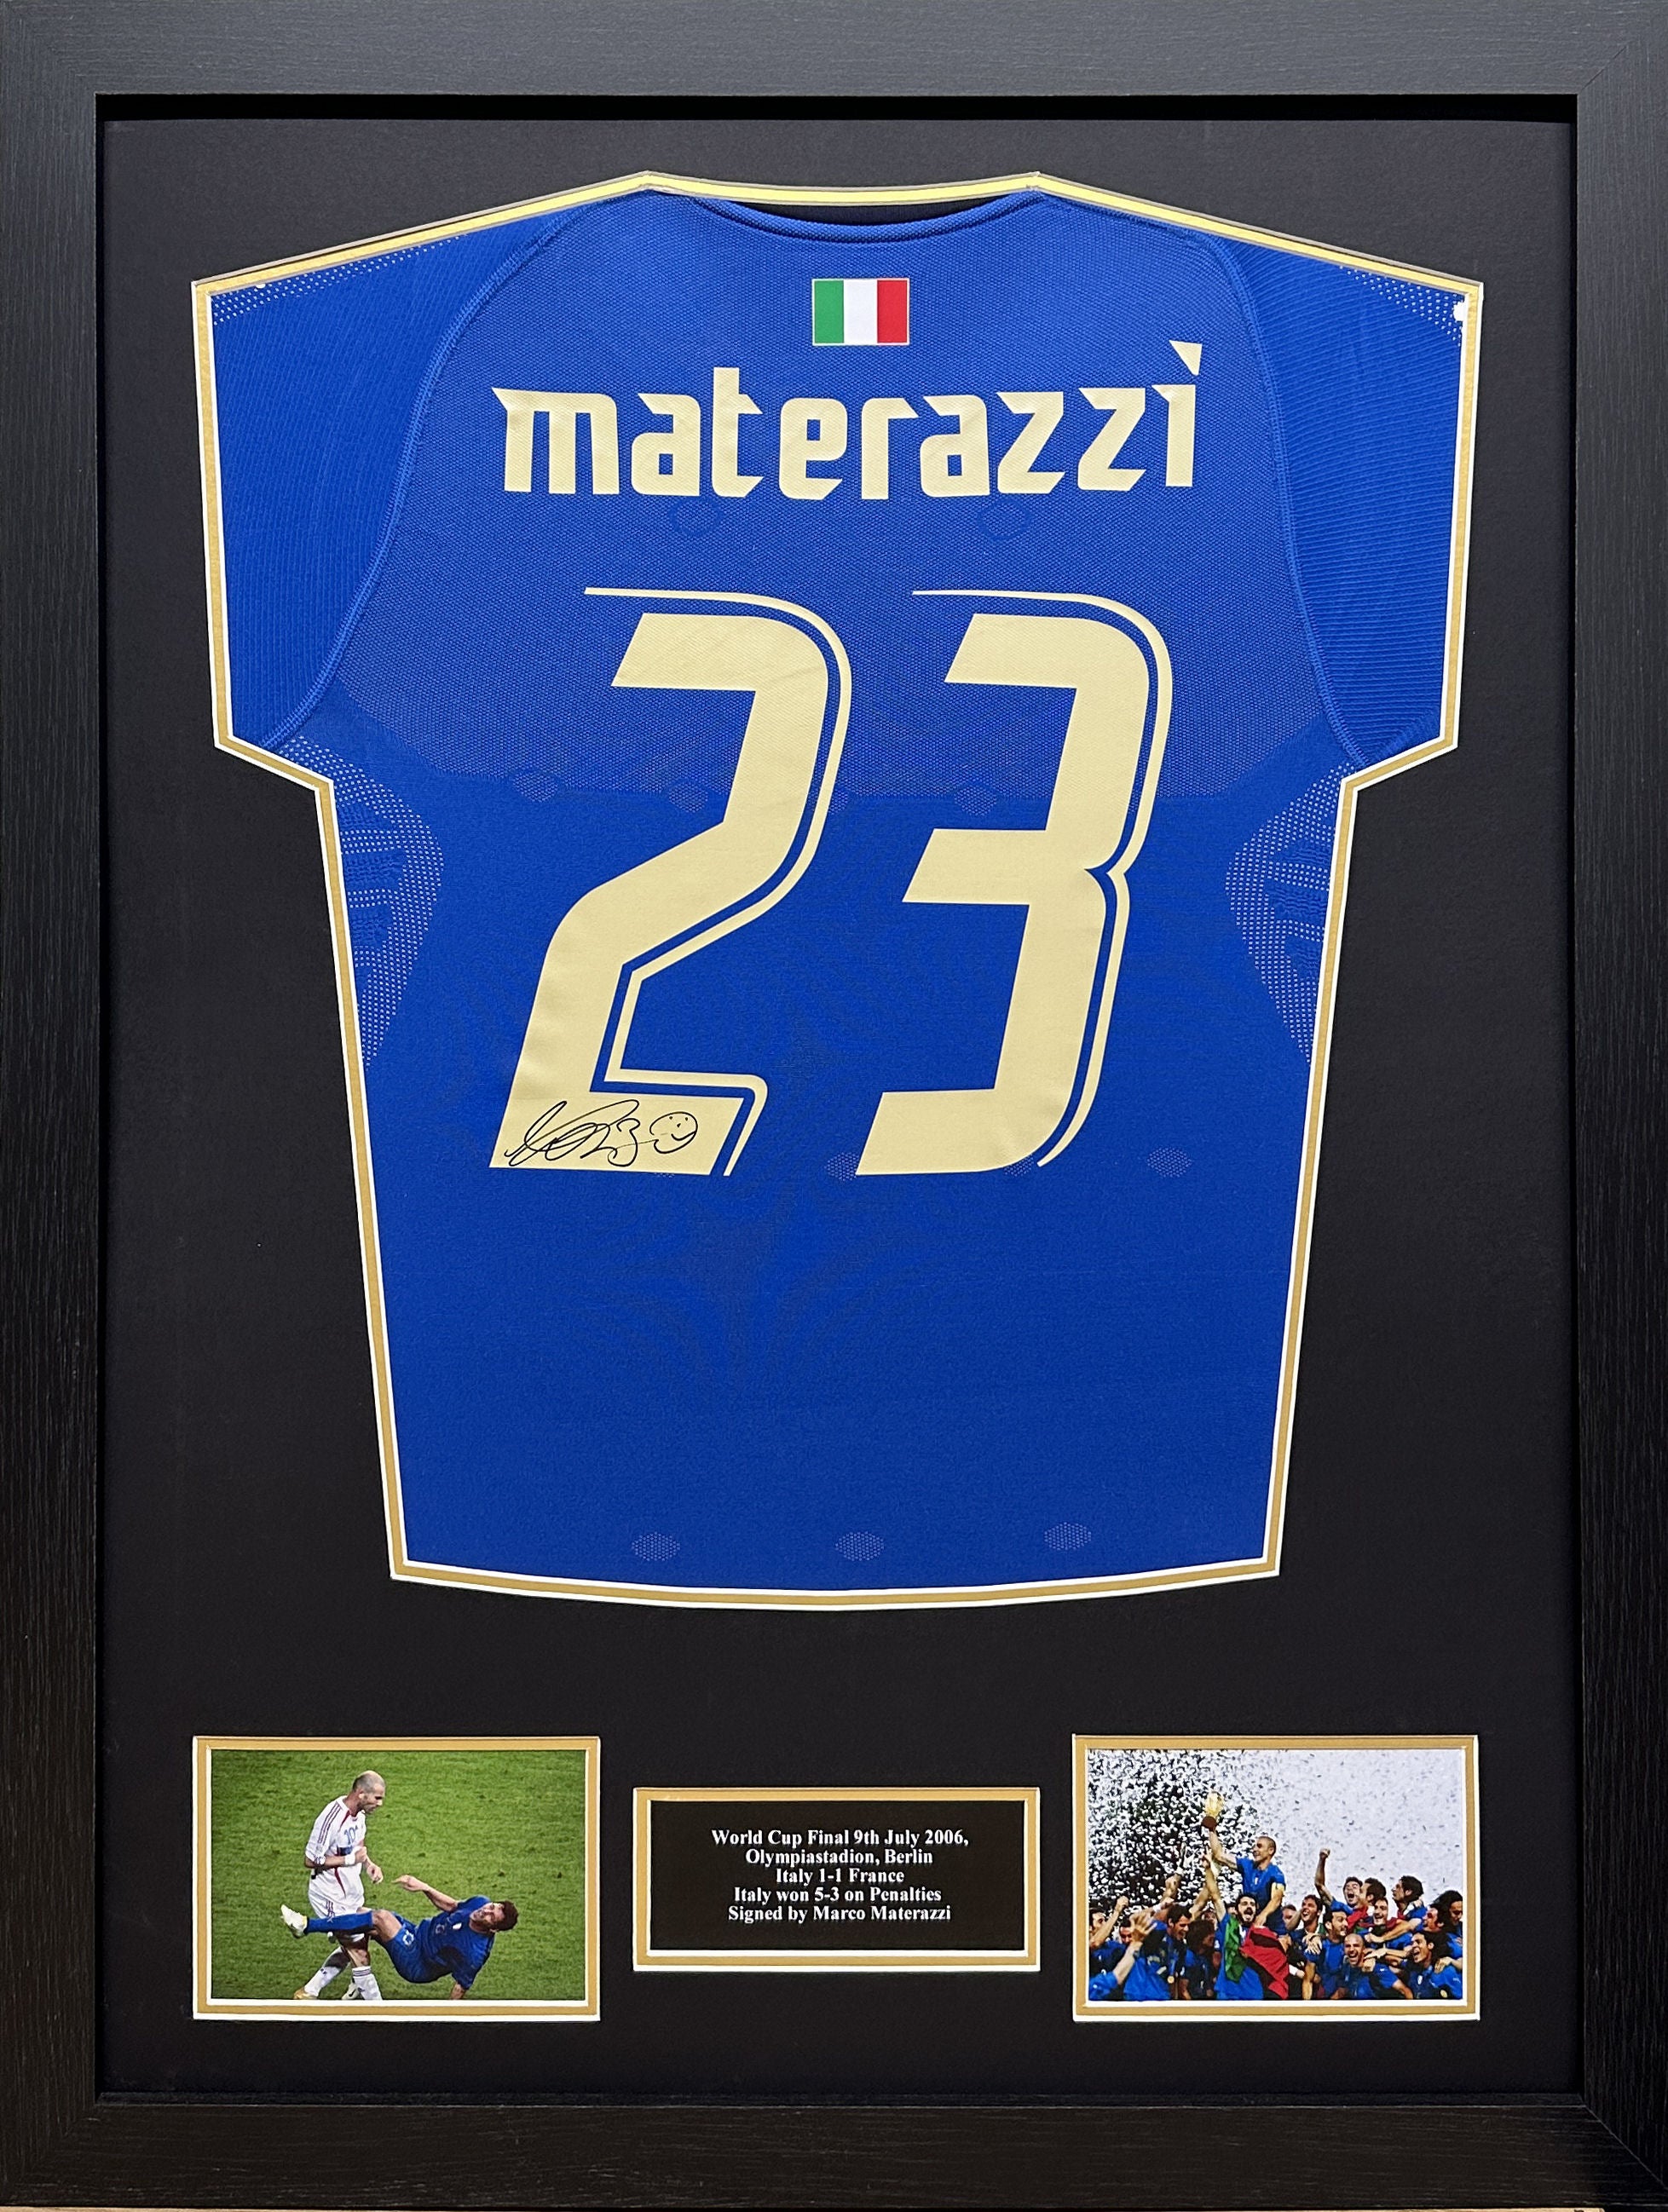  Marco Materazzi Country Code Hero - Camiseta (azul